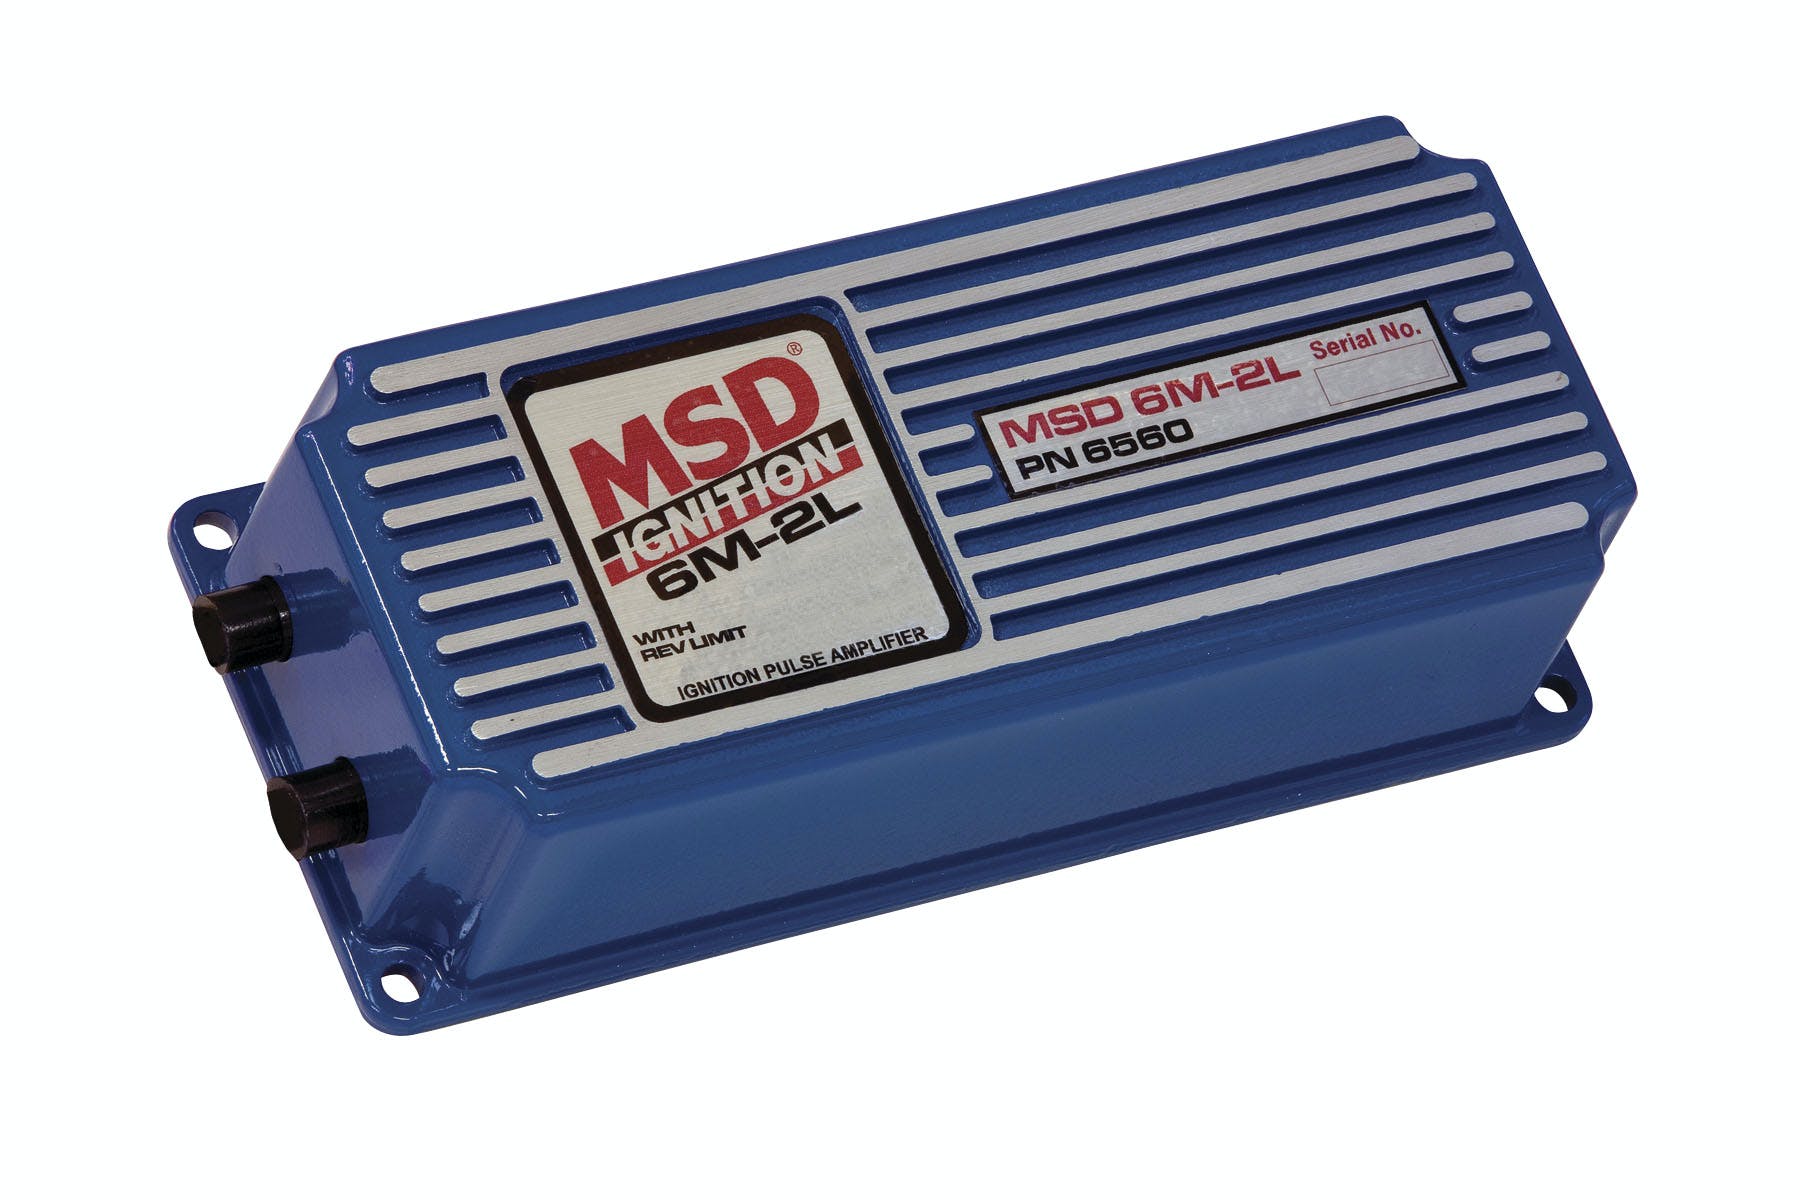 MSD Performance 6560 MSD 6M-2L Marine Ign w/Rev Limit Certif